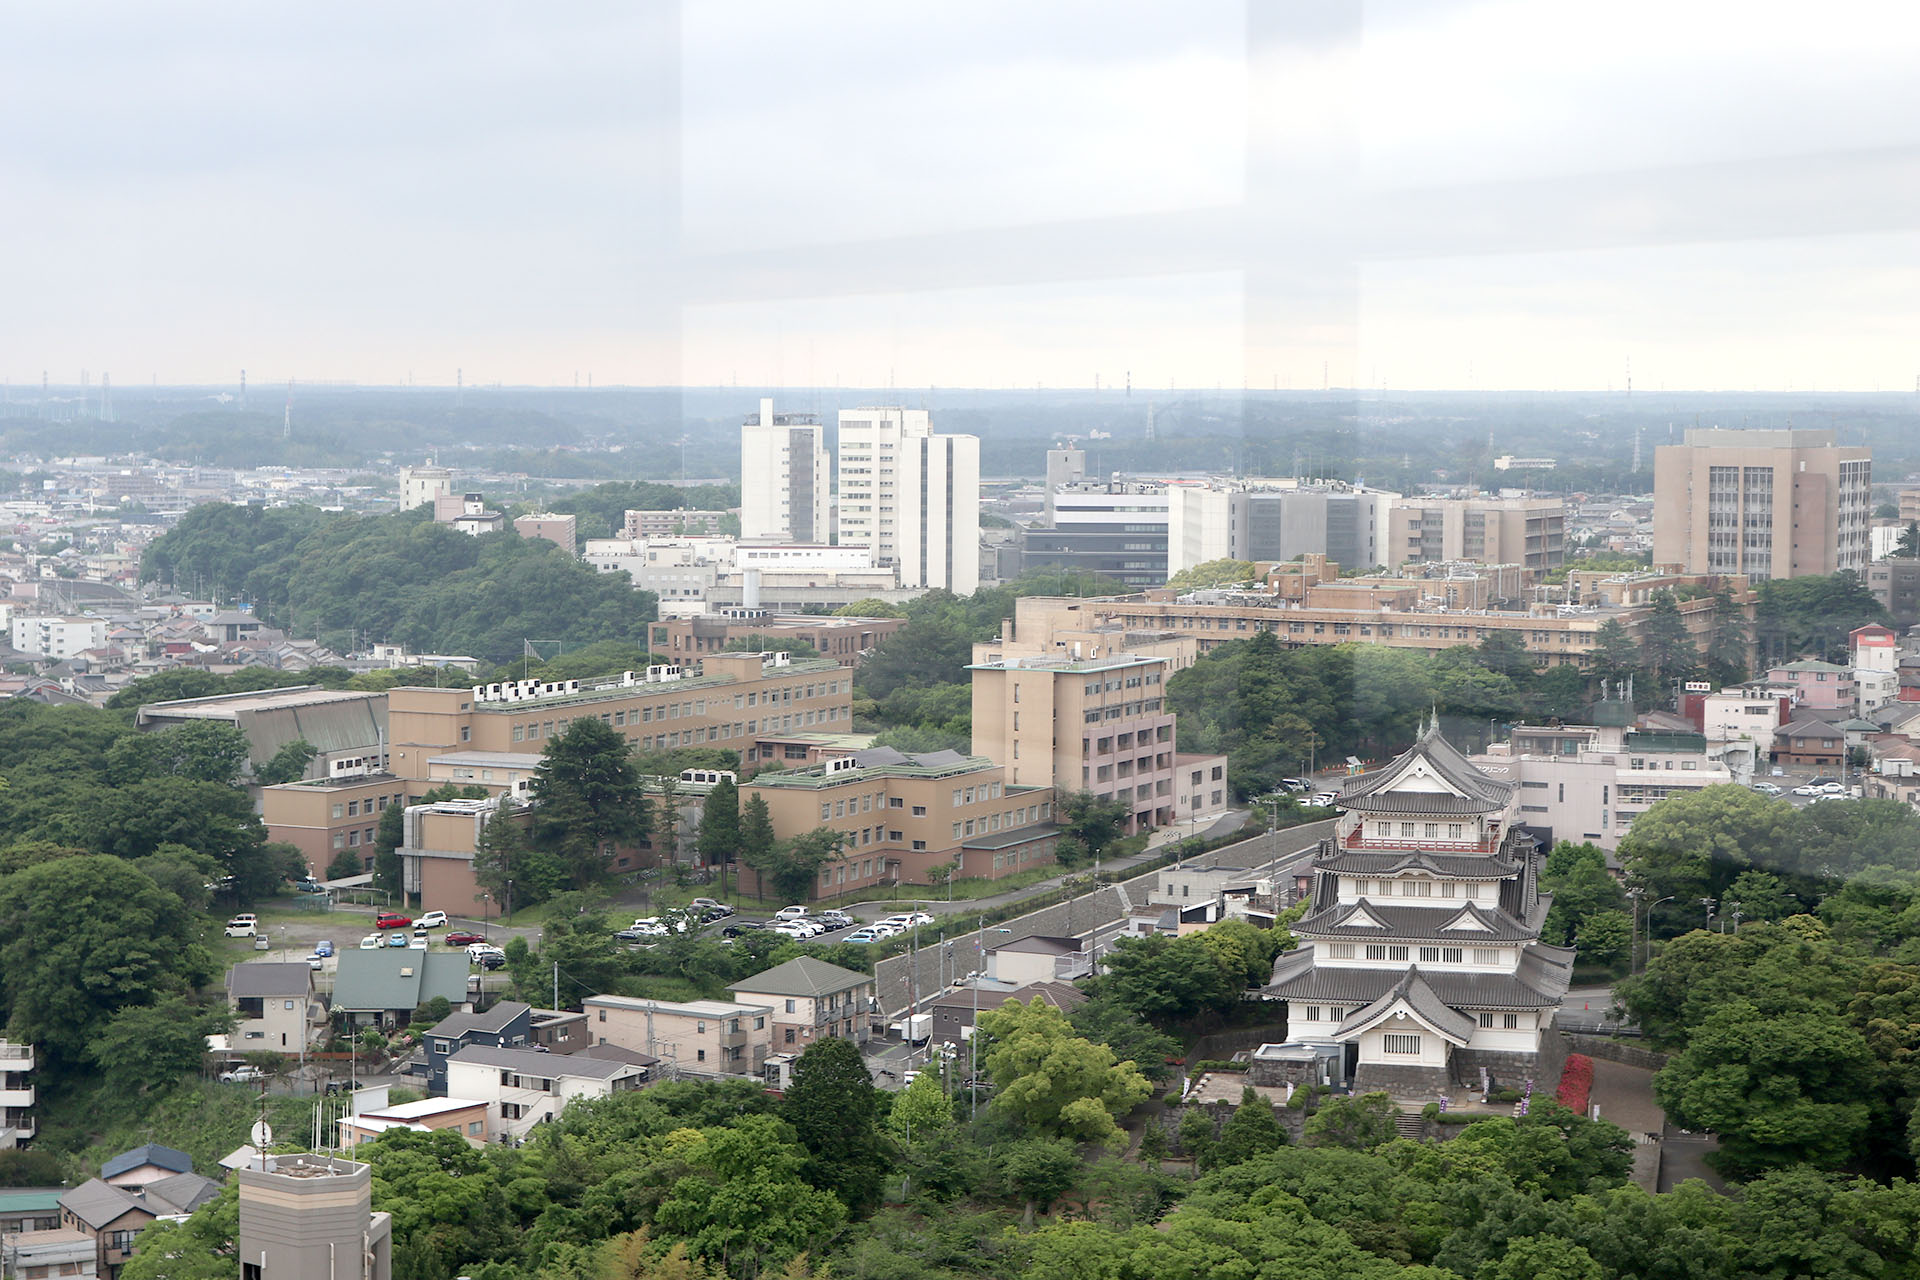 千葉大学亥鼻キャンパス